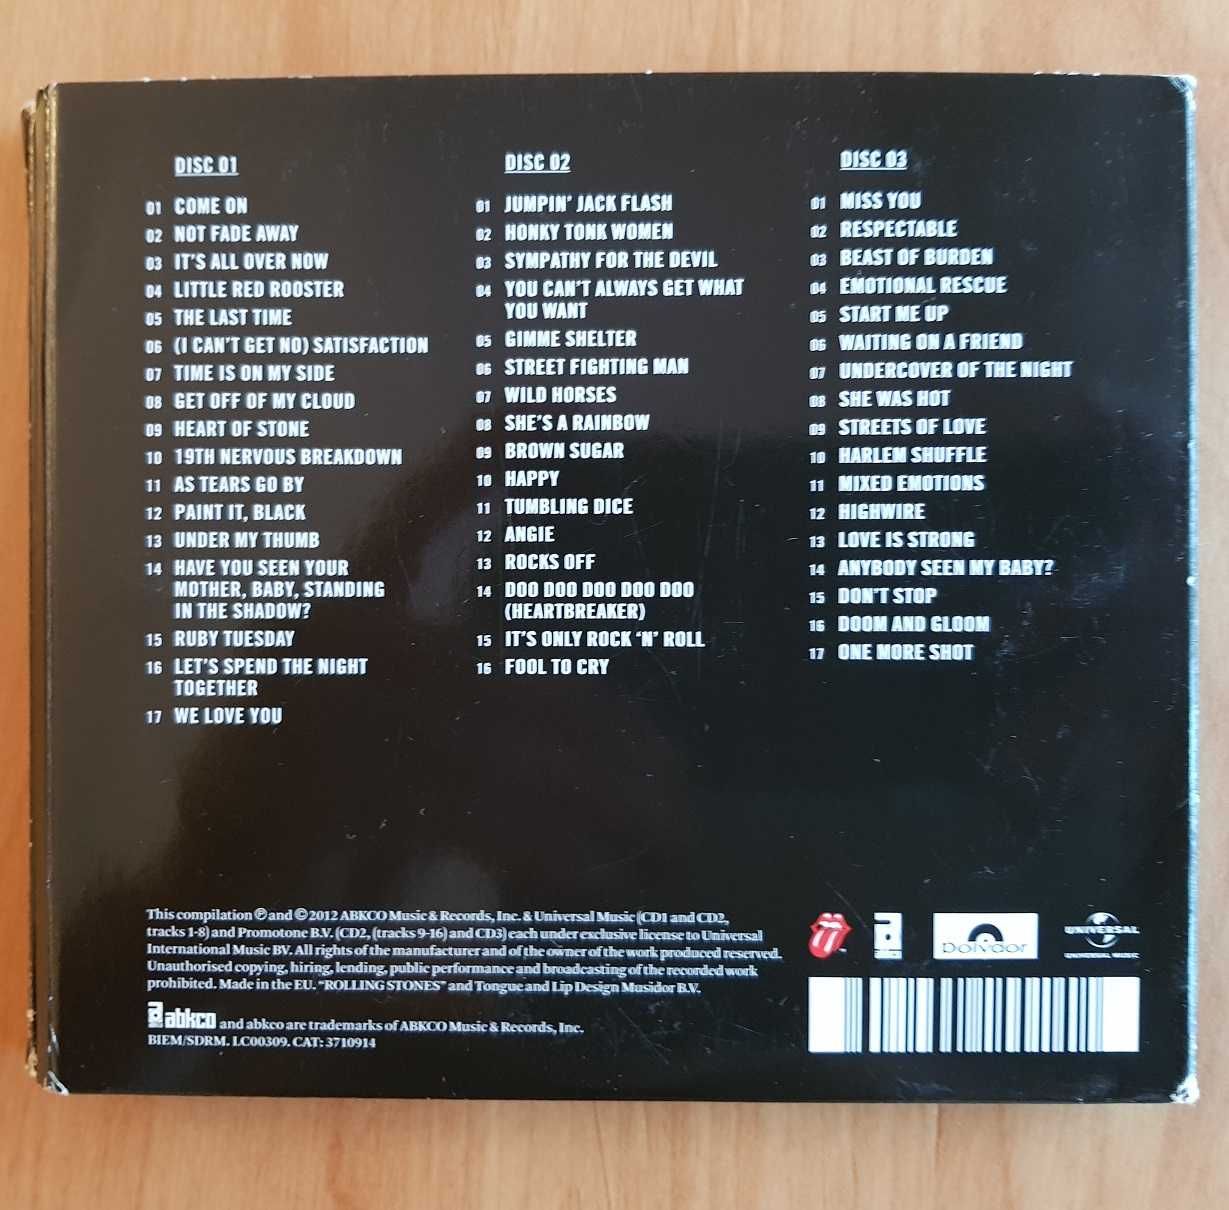 Rolling Stones - GRRR! (3 CD - 2012)